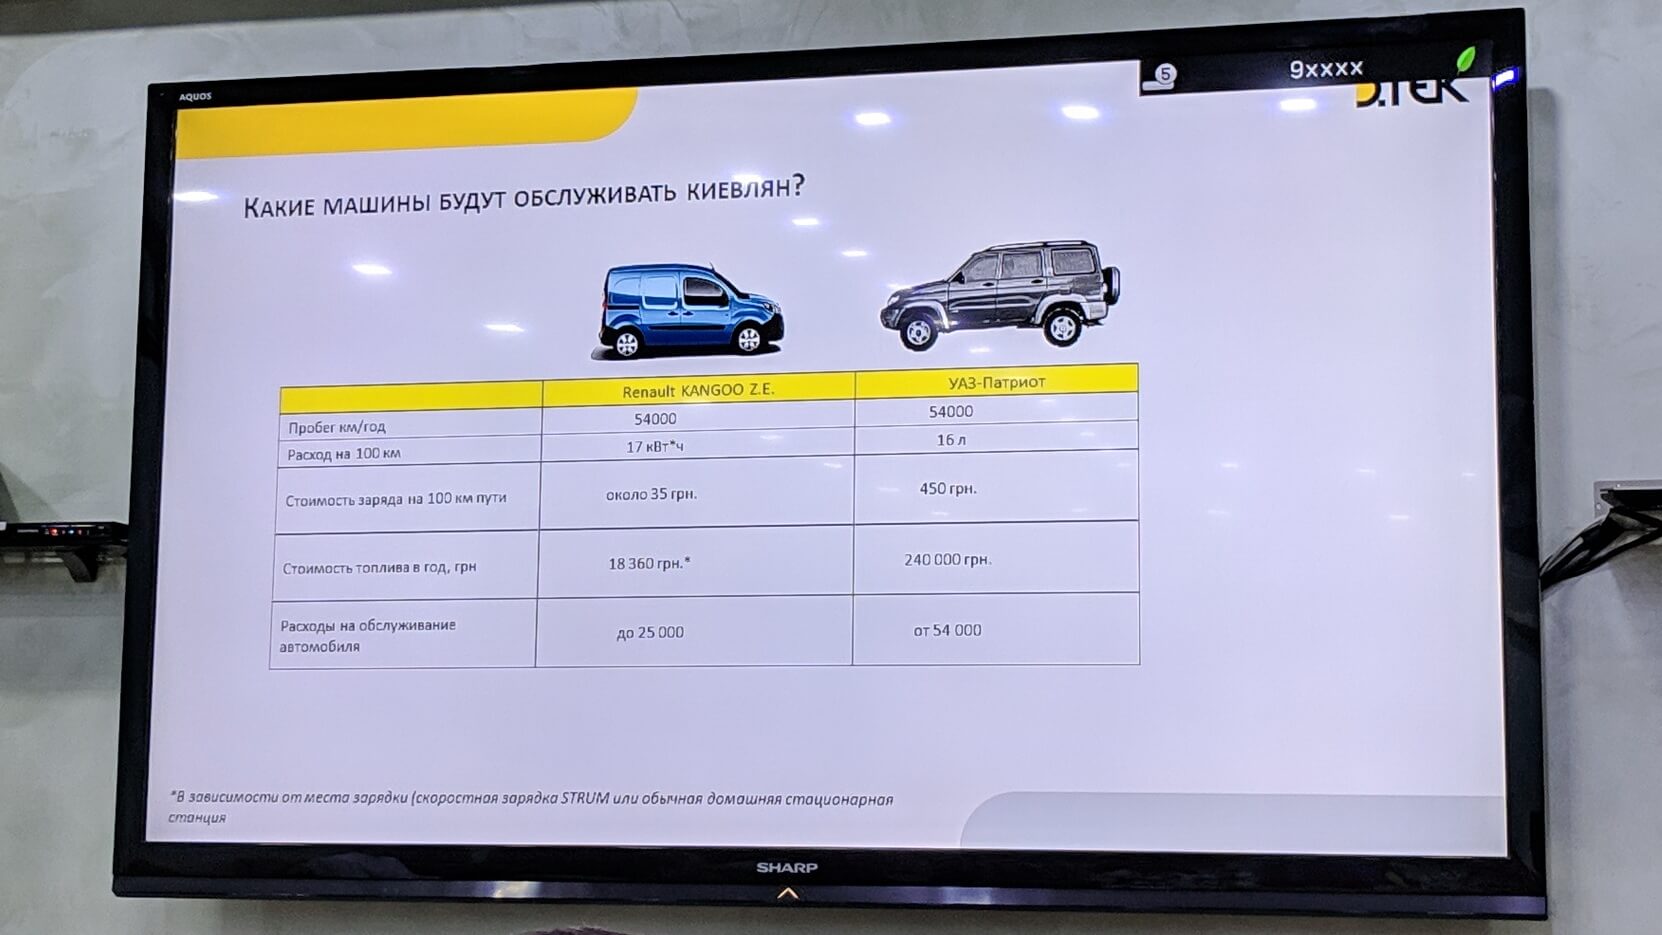 Сравнение стоимости обслуживания Renault Kangoo Z.E. и УАЗ-Патриот